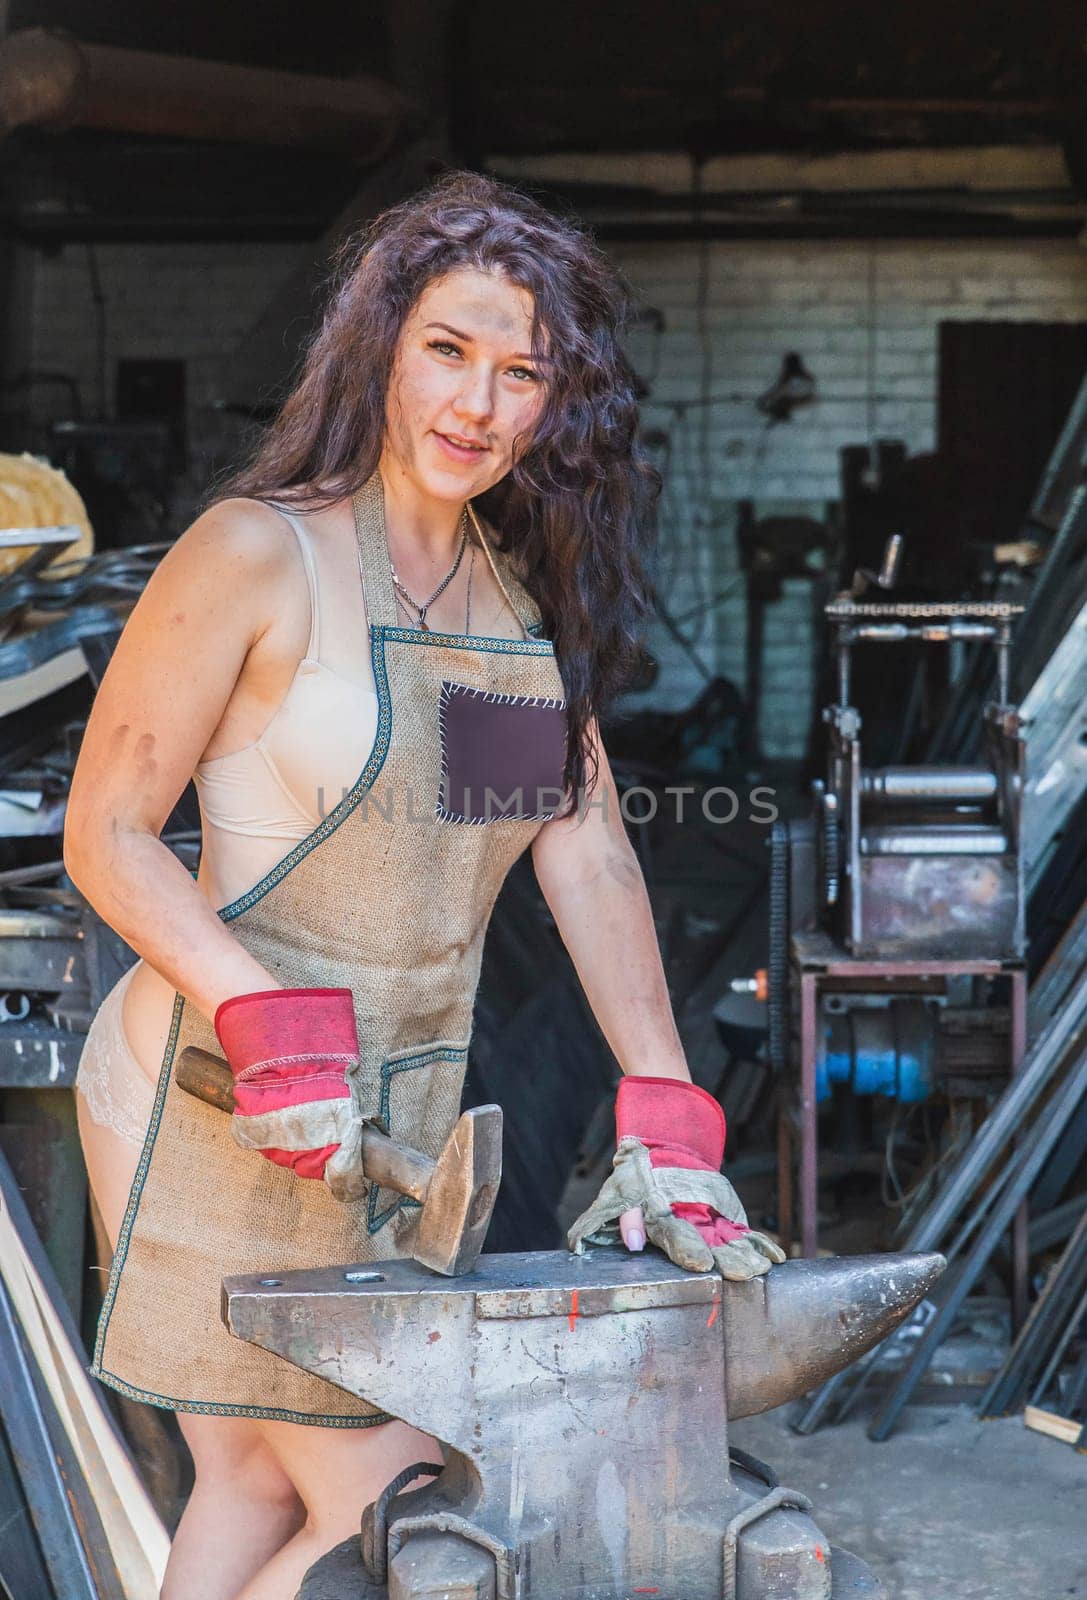 Blacksmith girl in the workshop near the anvil.